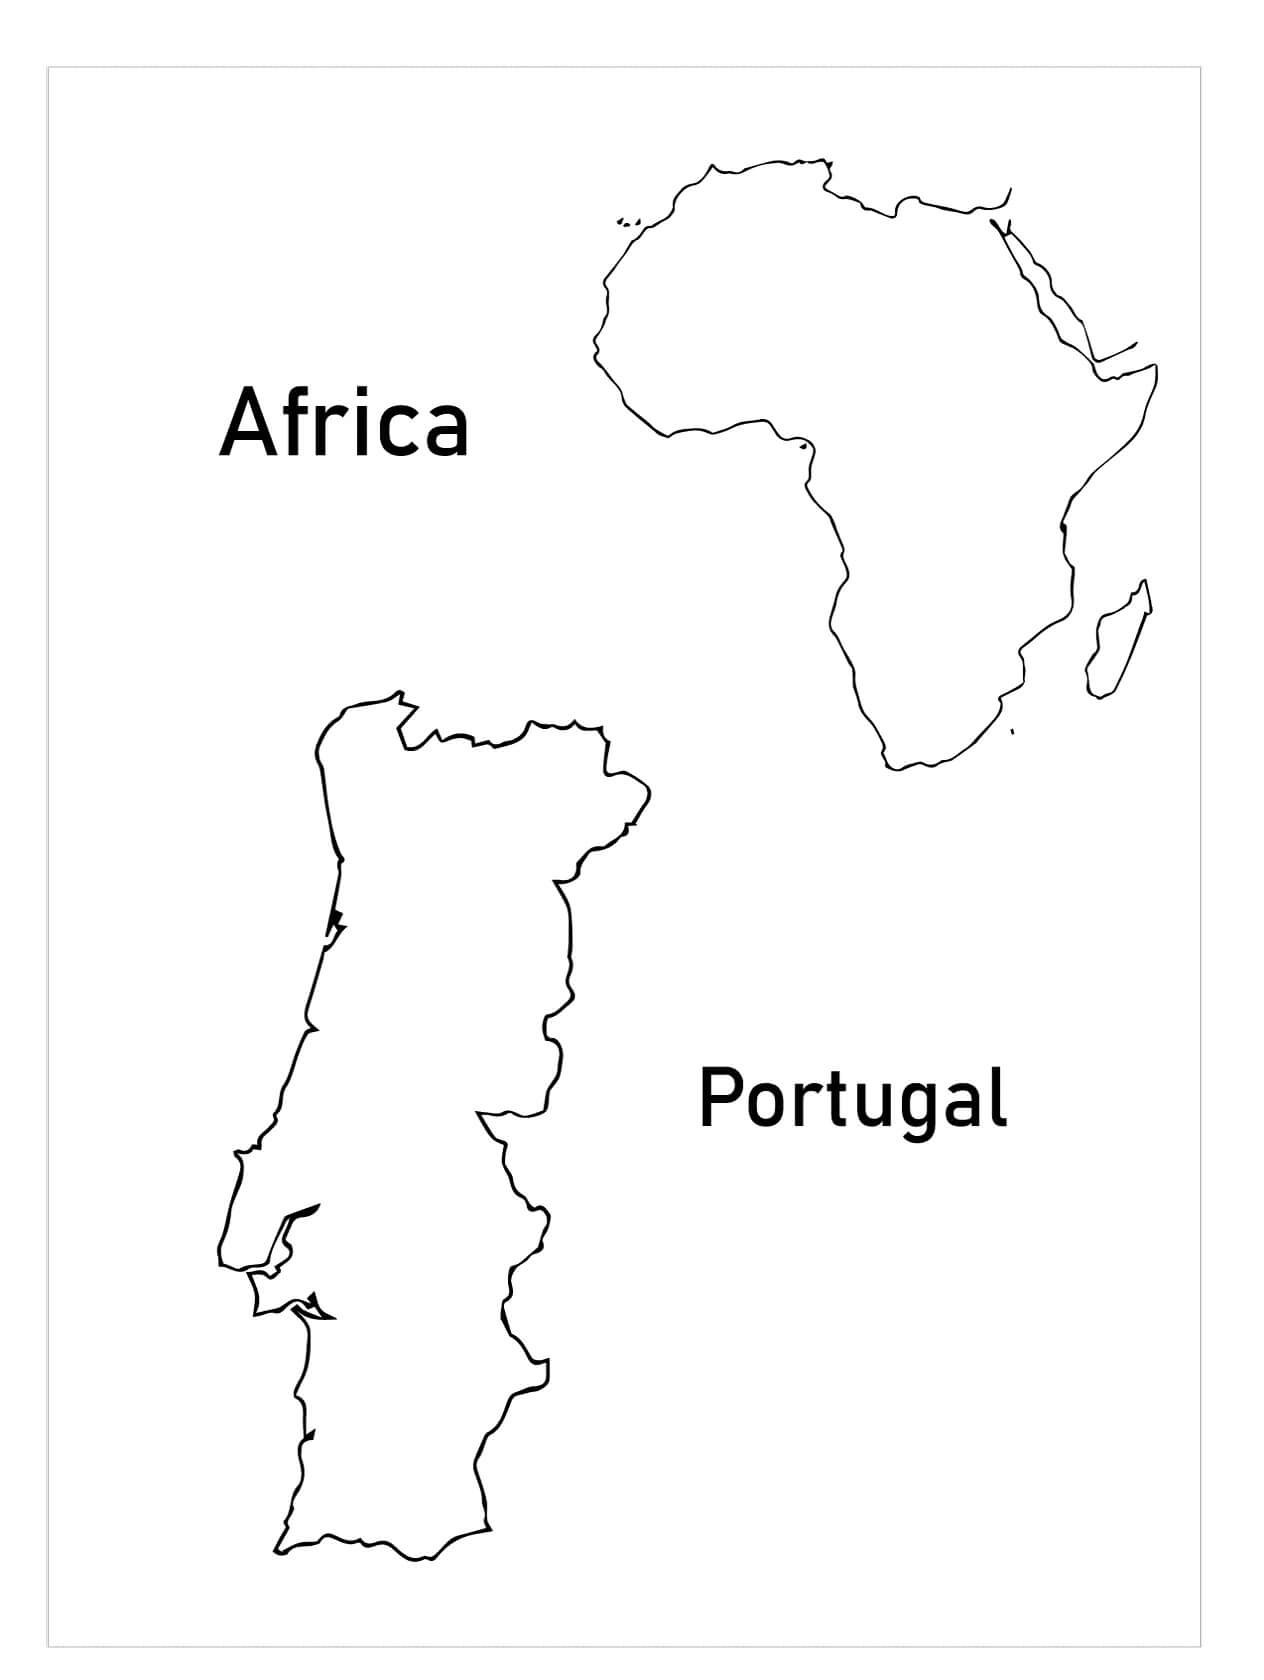 Mapa de Portugal e África para colorir